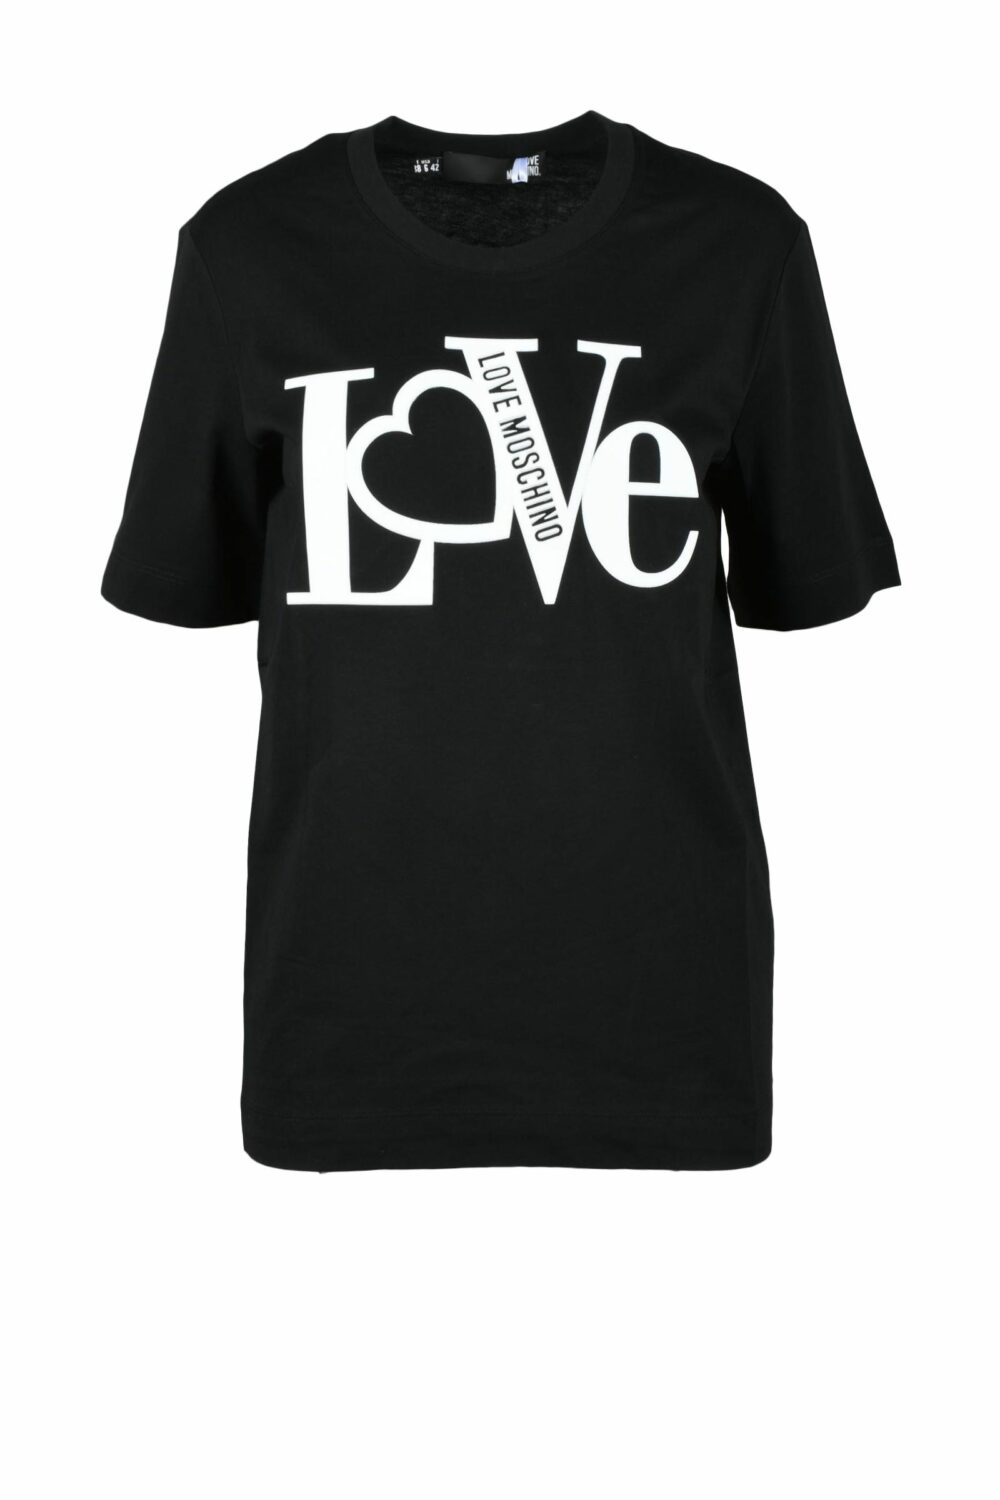 T-shirt Love Moschino Nero - Foto 1